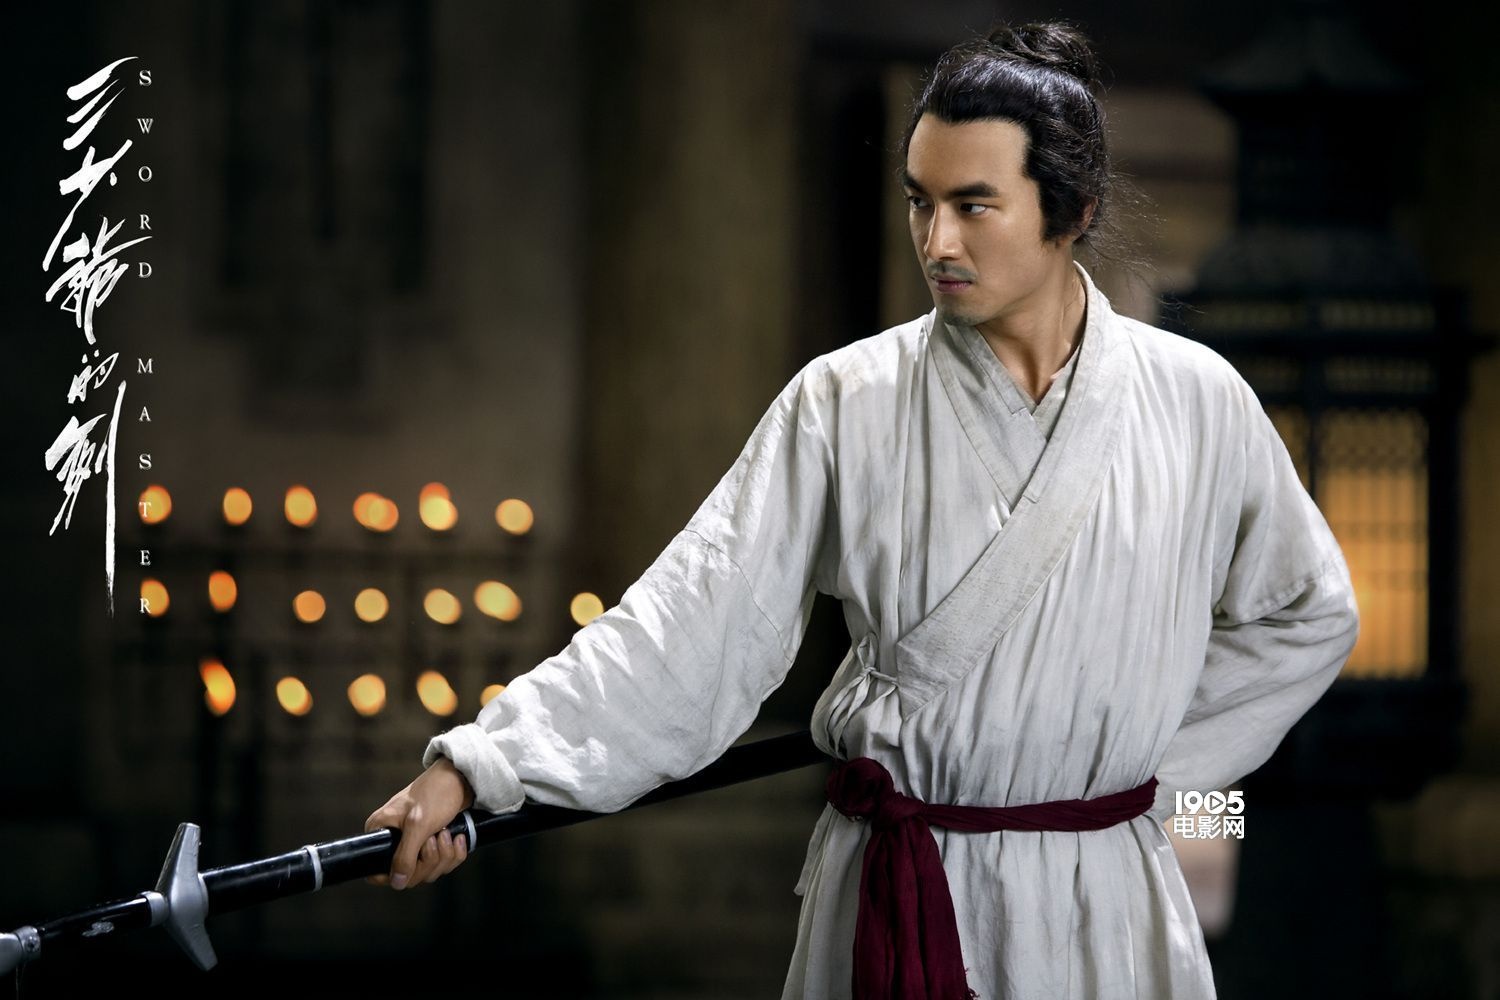 《三少爷的剑》爱情版预告 江一燕追杀林更新